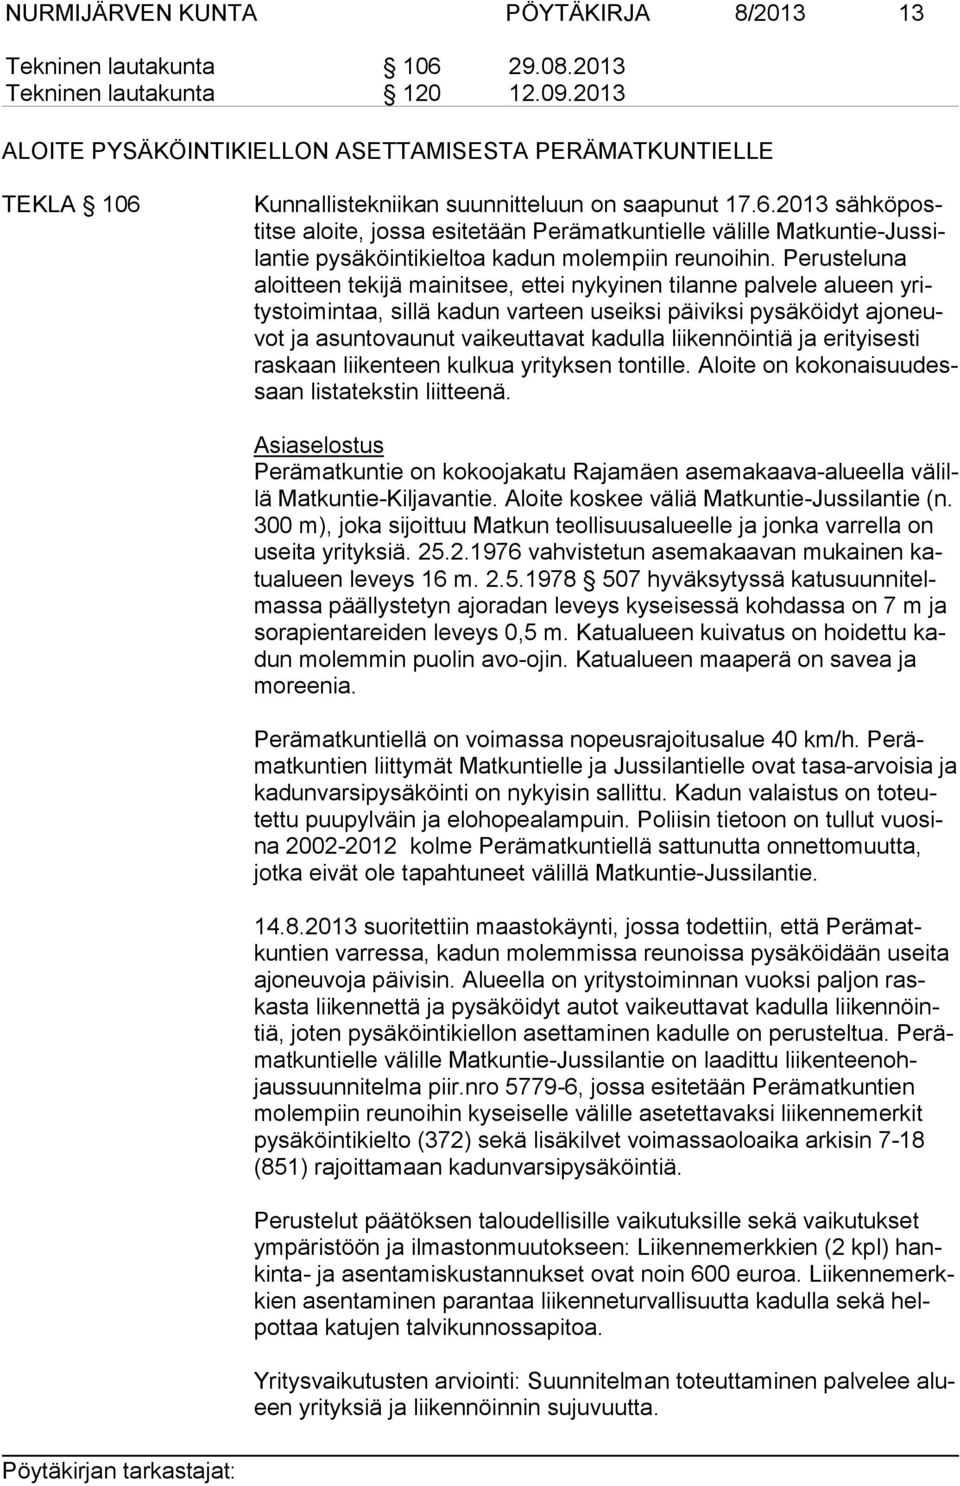 Kunnallistekniikan suunnitteluun on saapunut 17.6.2013 sähköpostitse aloite, jossa esitetään Perämatkuntielle välille Matkuntie-Jussilantie pysäköintikieltoa kadun molempiin reunoihin.